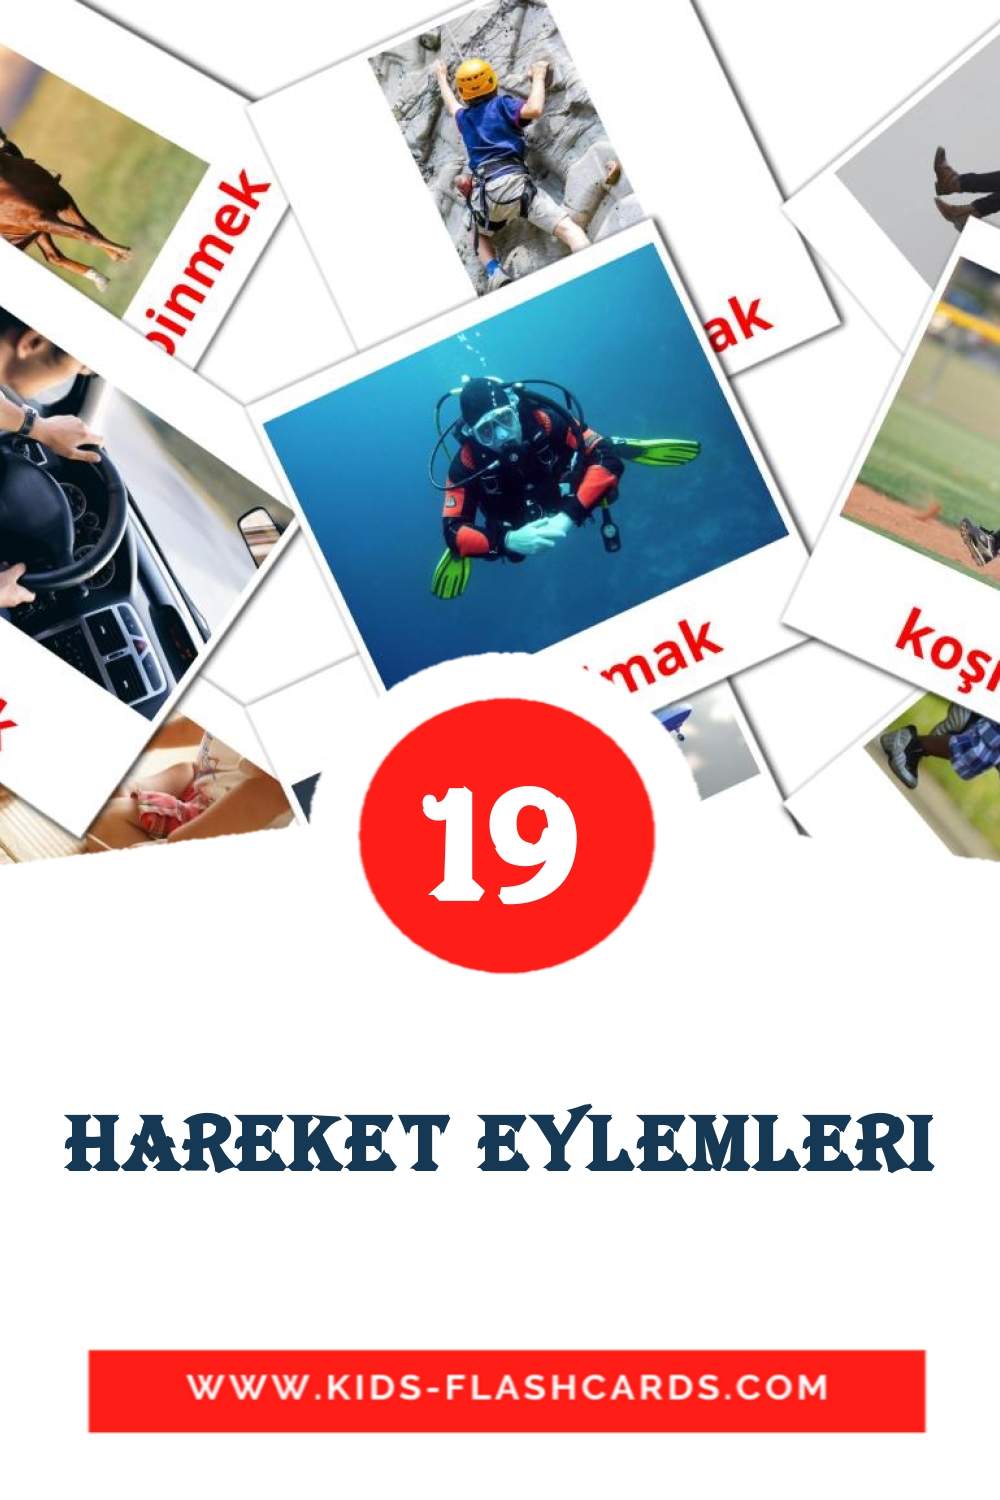 22 cartes illustrées de hareket eylemleri pour la maternelle en turc